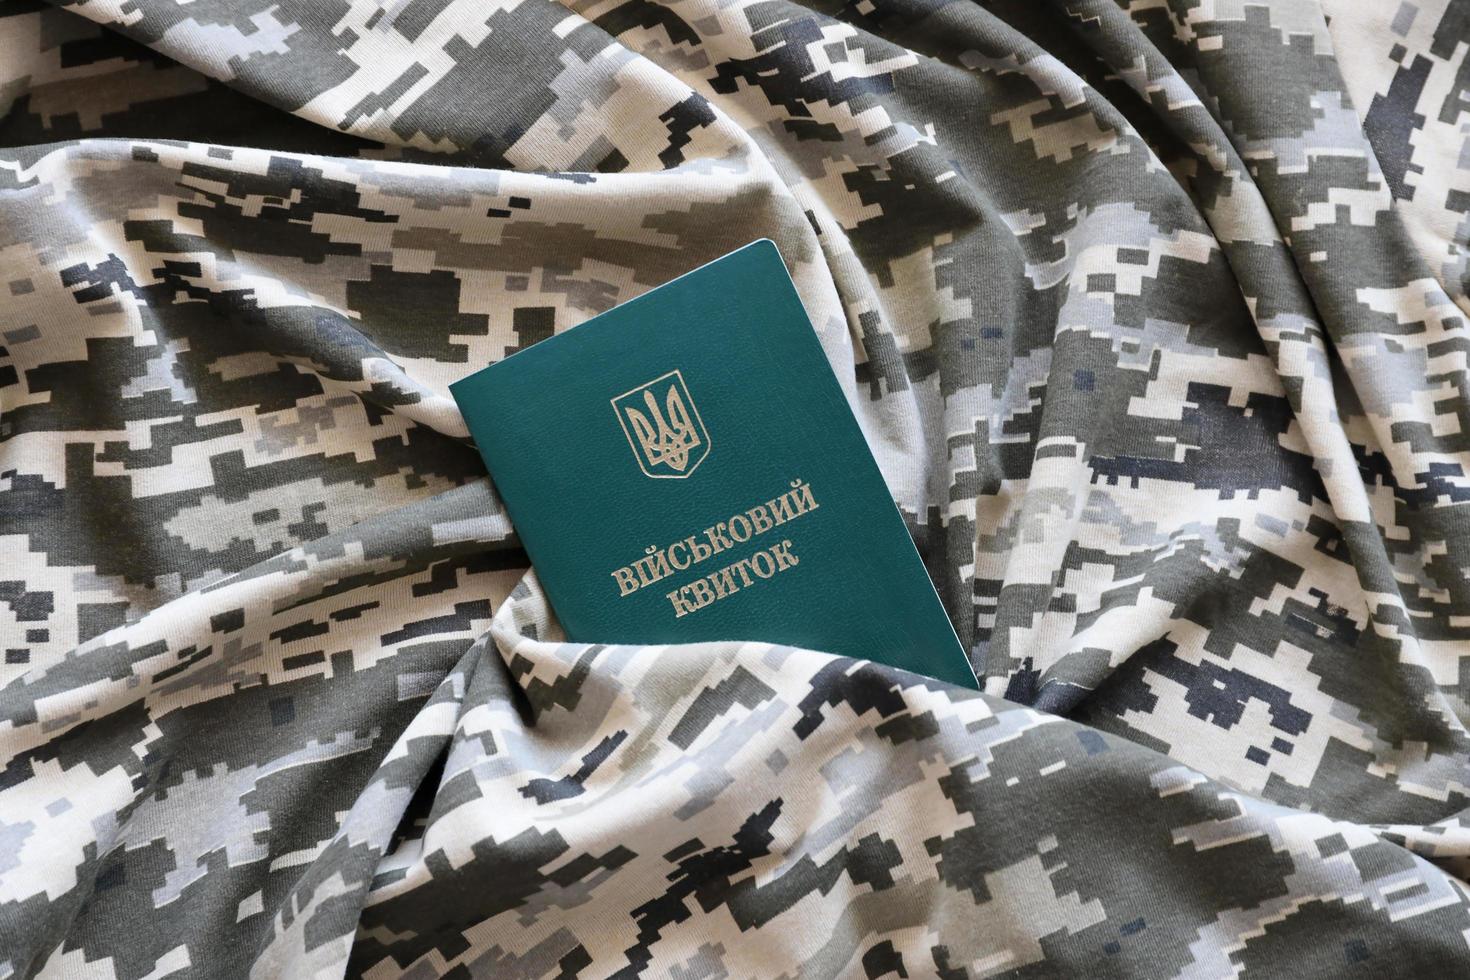 sumy, ukraine - 20. märz 2022 ukrainischer militärausweis auf stoff mit textur aus pixeliger tarnung. Stoff mit Tarnmuster in grauen, braunen und grünen Pixelformen mit persönlichem Token der ukrainischen Armee foto